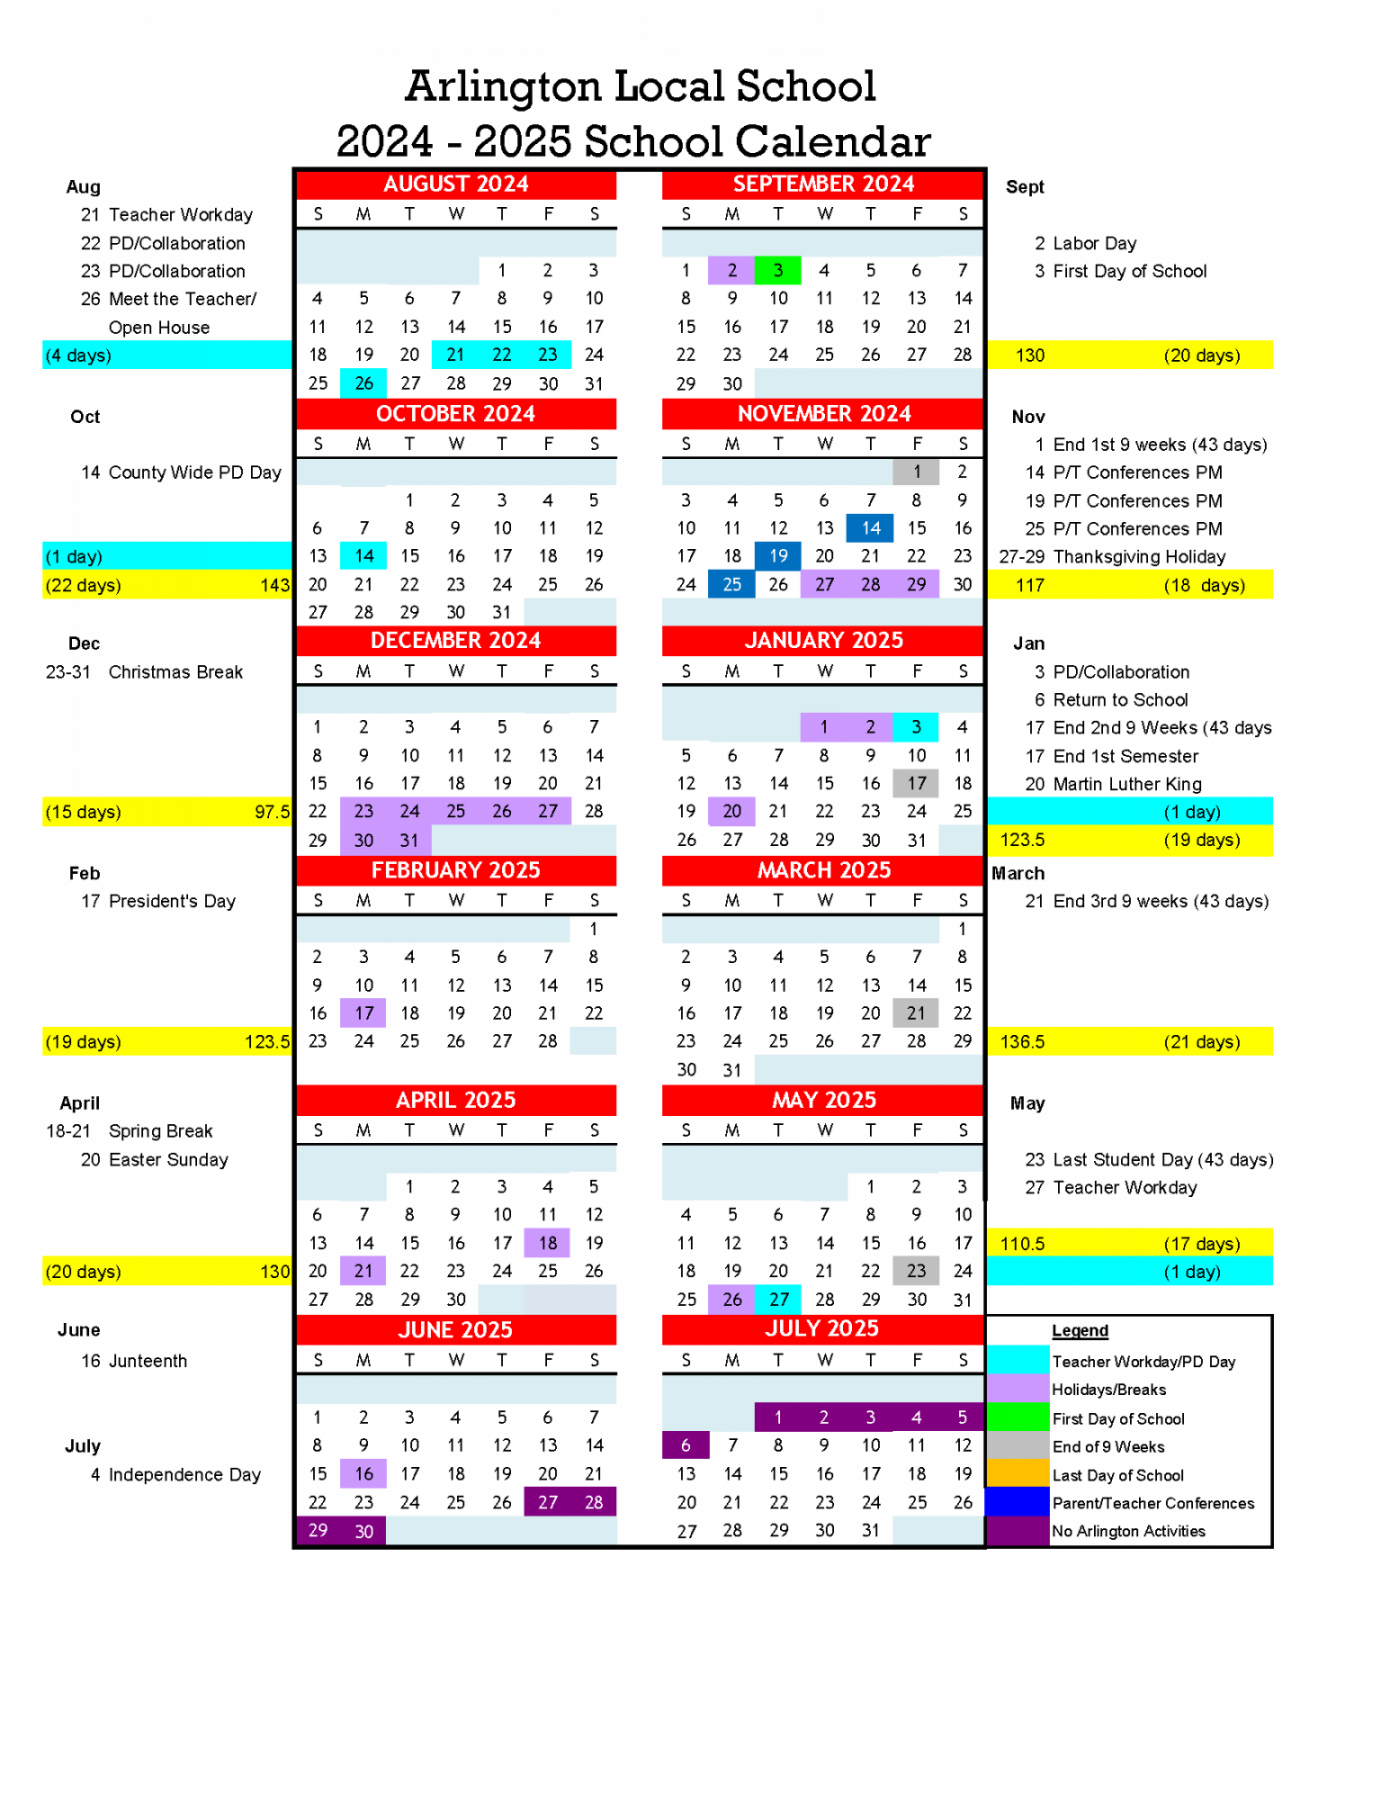 School Calendars - Arlington Local Schools